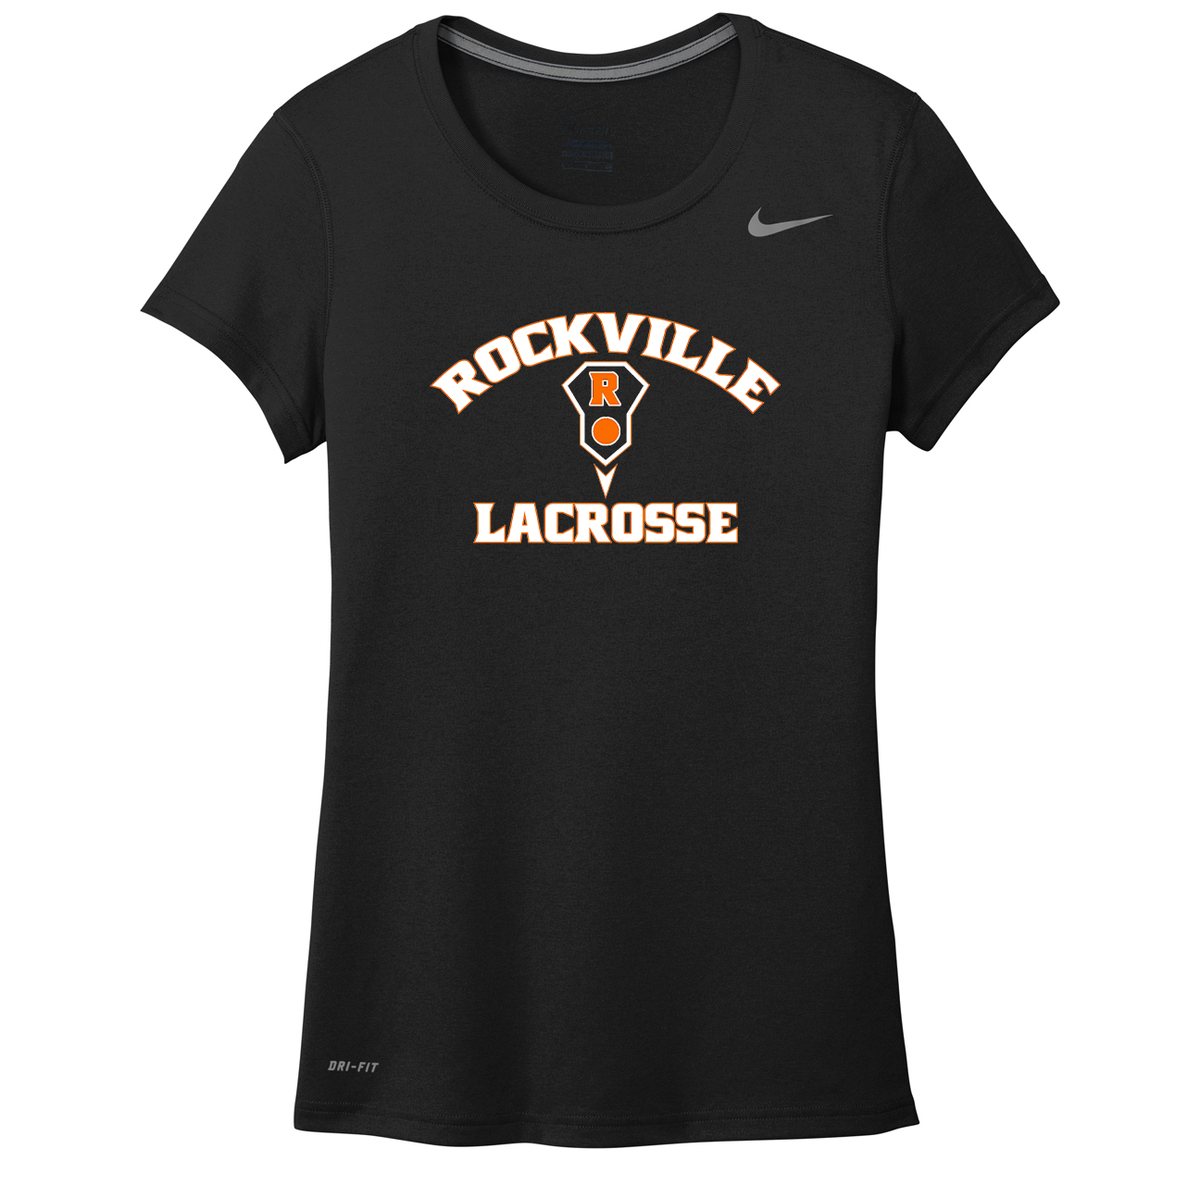 Rockville HS Girls Lacrosse Nike Ladies Legend Tee